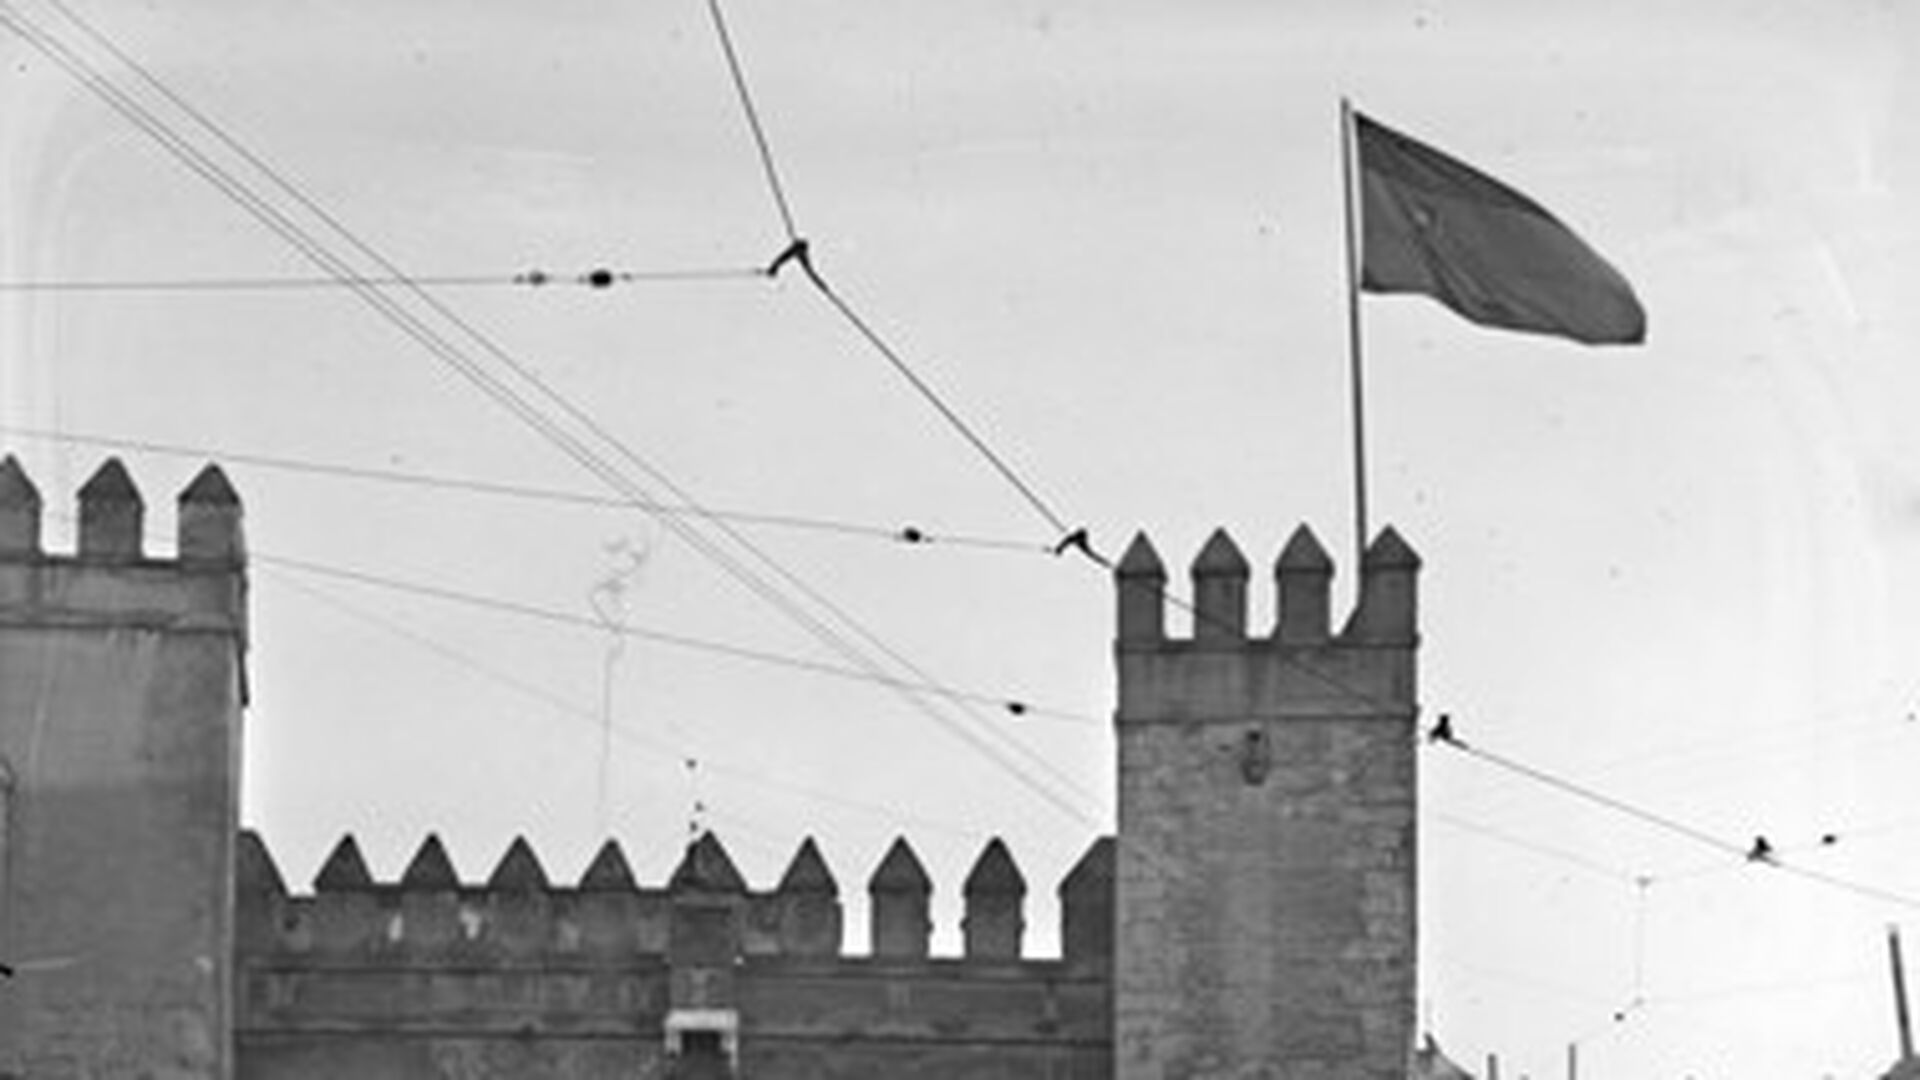 Puerta del Le&oacute;n del Alc&aacute;zar coronada por la bandera tricolor de la Segunda Rep&uacute;blica. Guardias de Asalto escoltan la entrada anta la expectaci&oacute;n del p&uacute;blico asistente a la entrega oficial del Alc&aacute;zar al Ayuntamiento de Sevilla el 31 de octubre de 1931.